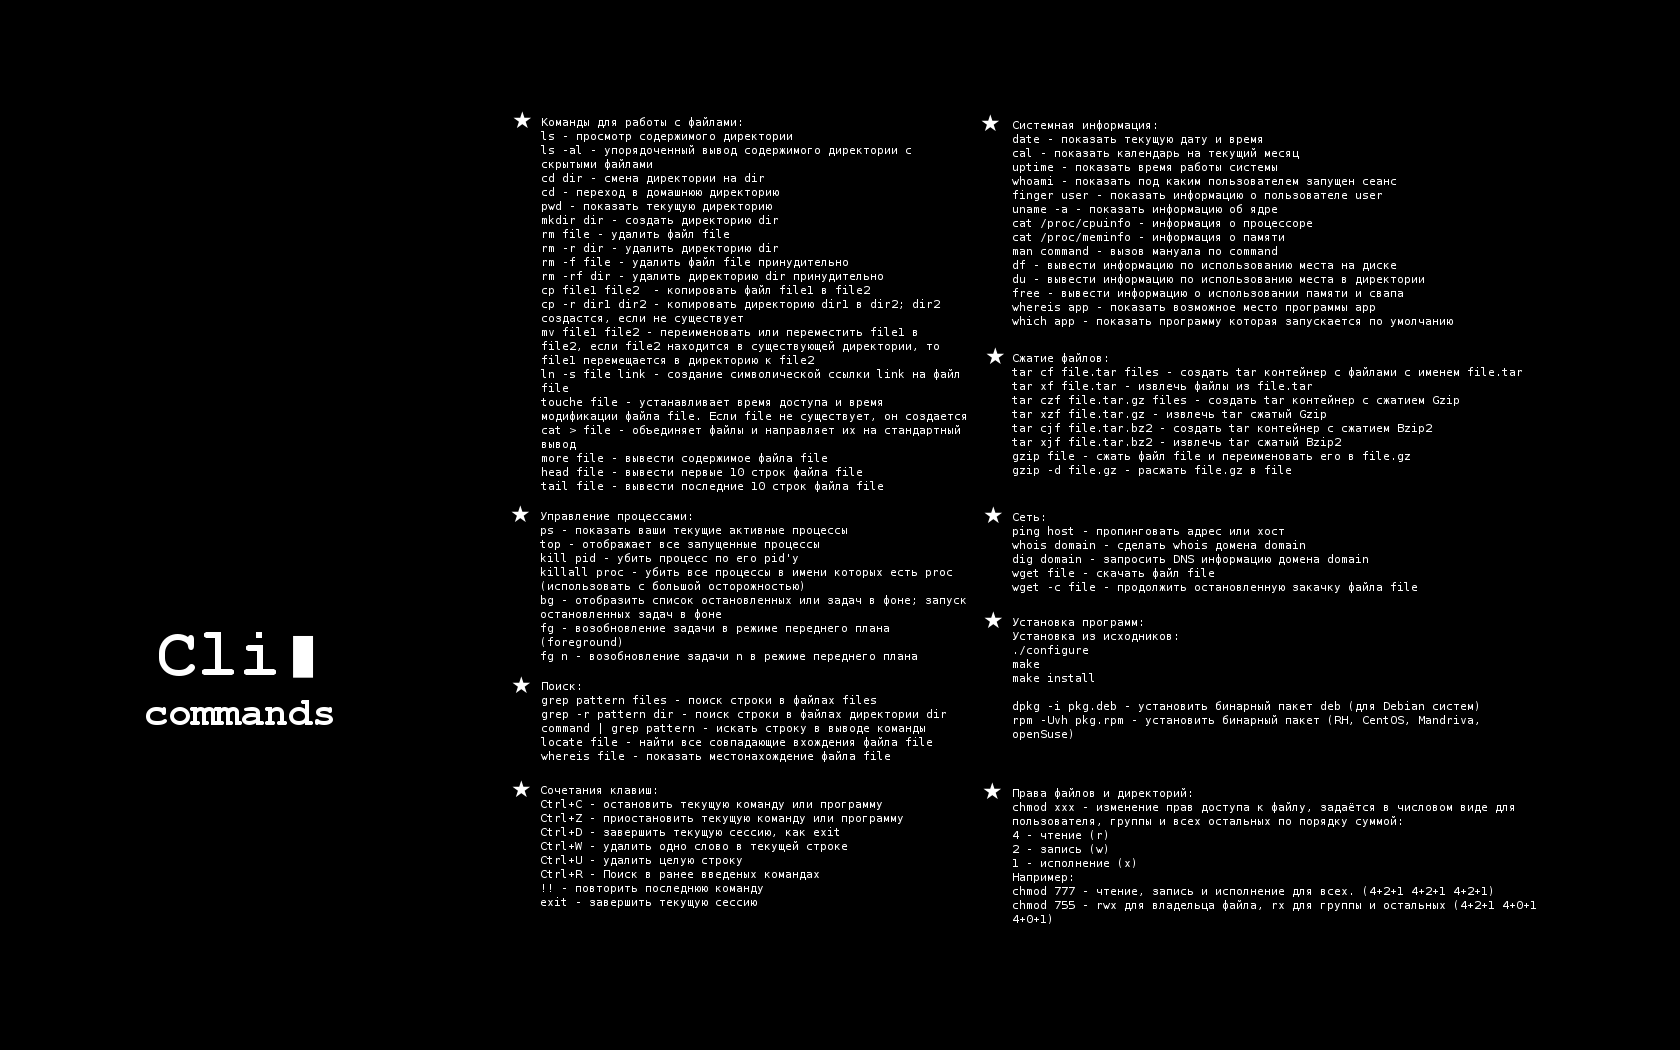 (Wallpaper c основными командами для начинающих в Linux. CLI commands.)